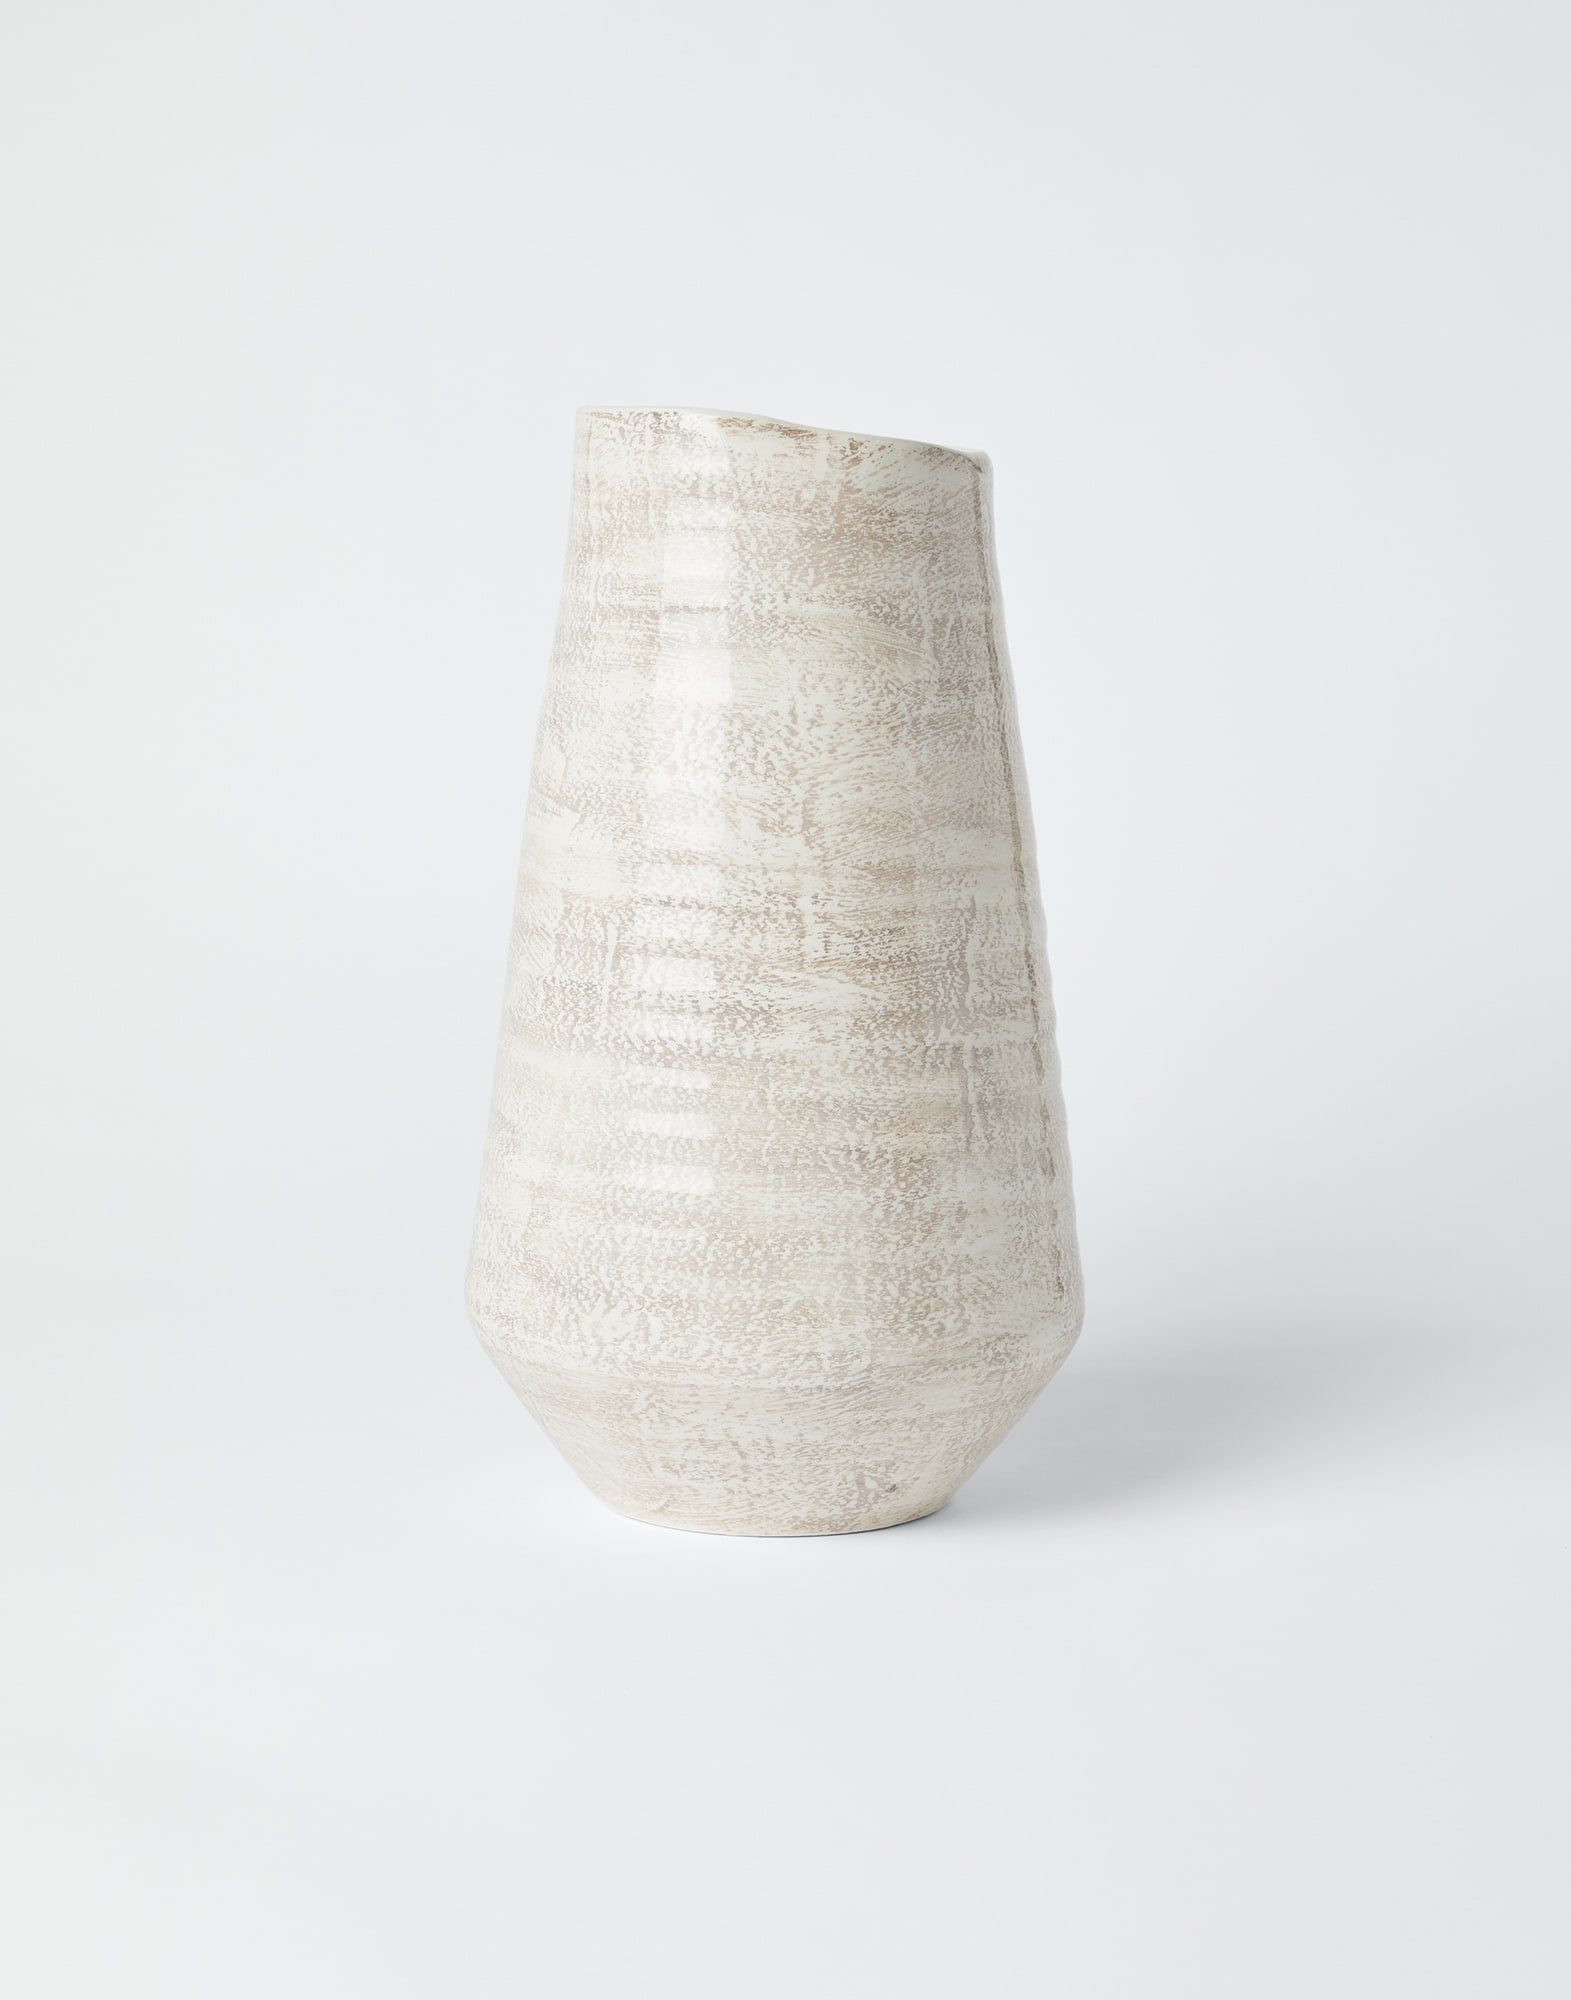 Maxi ceramic vase